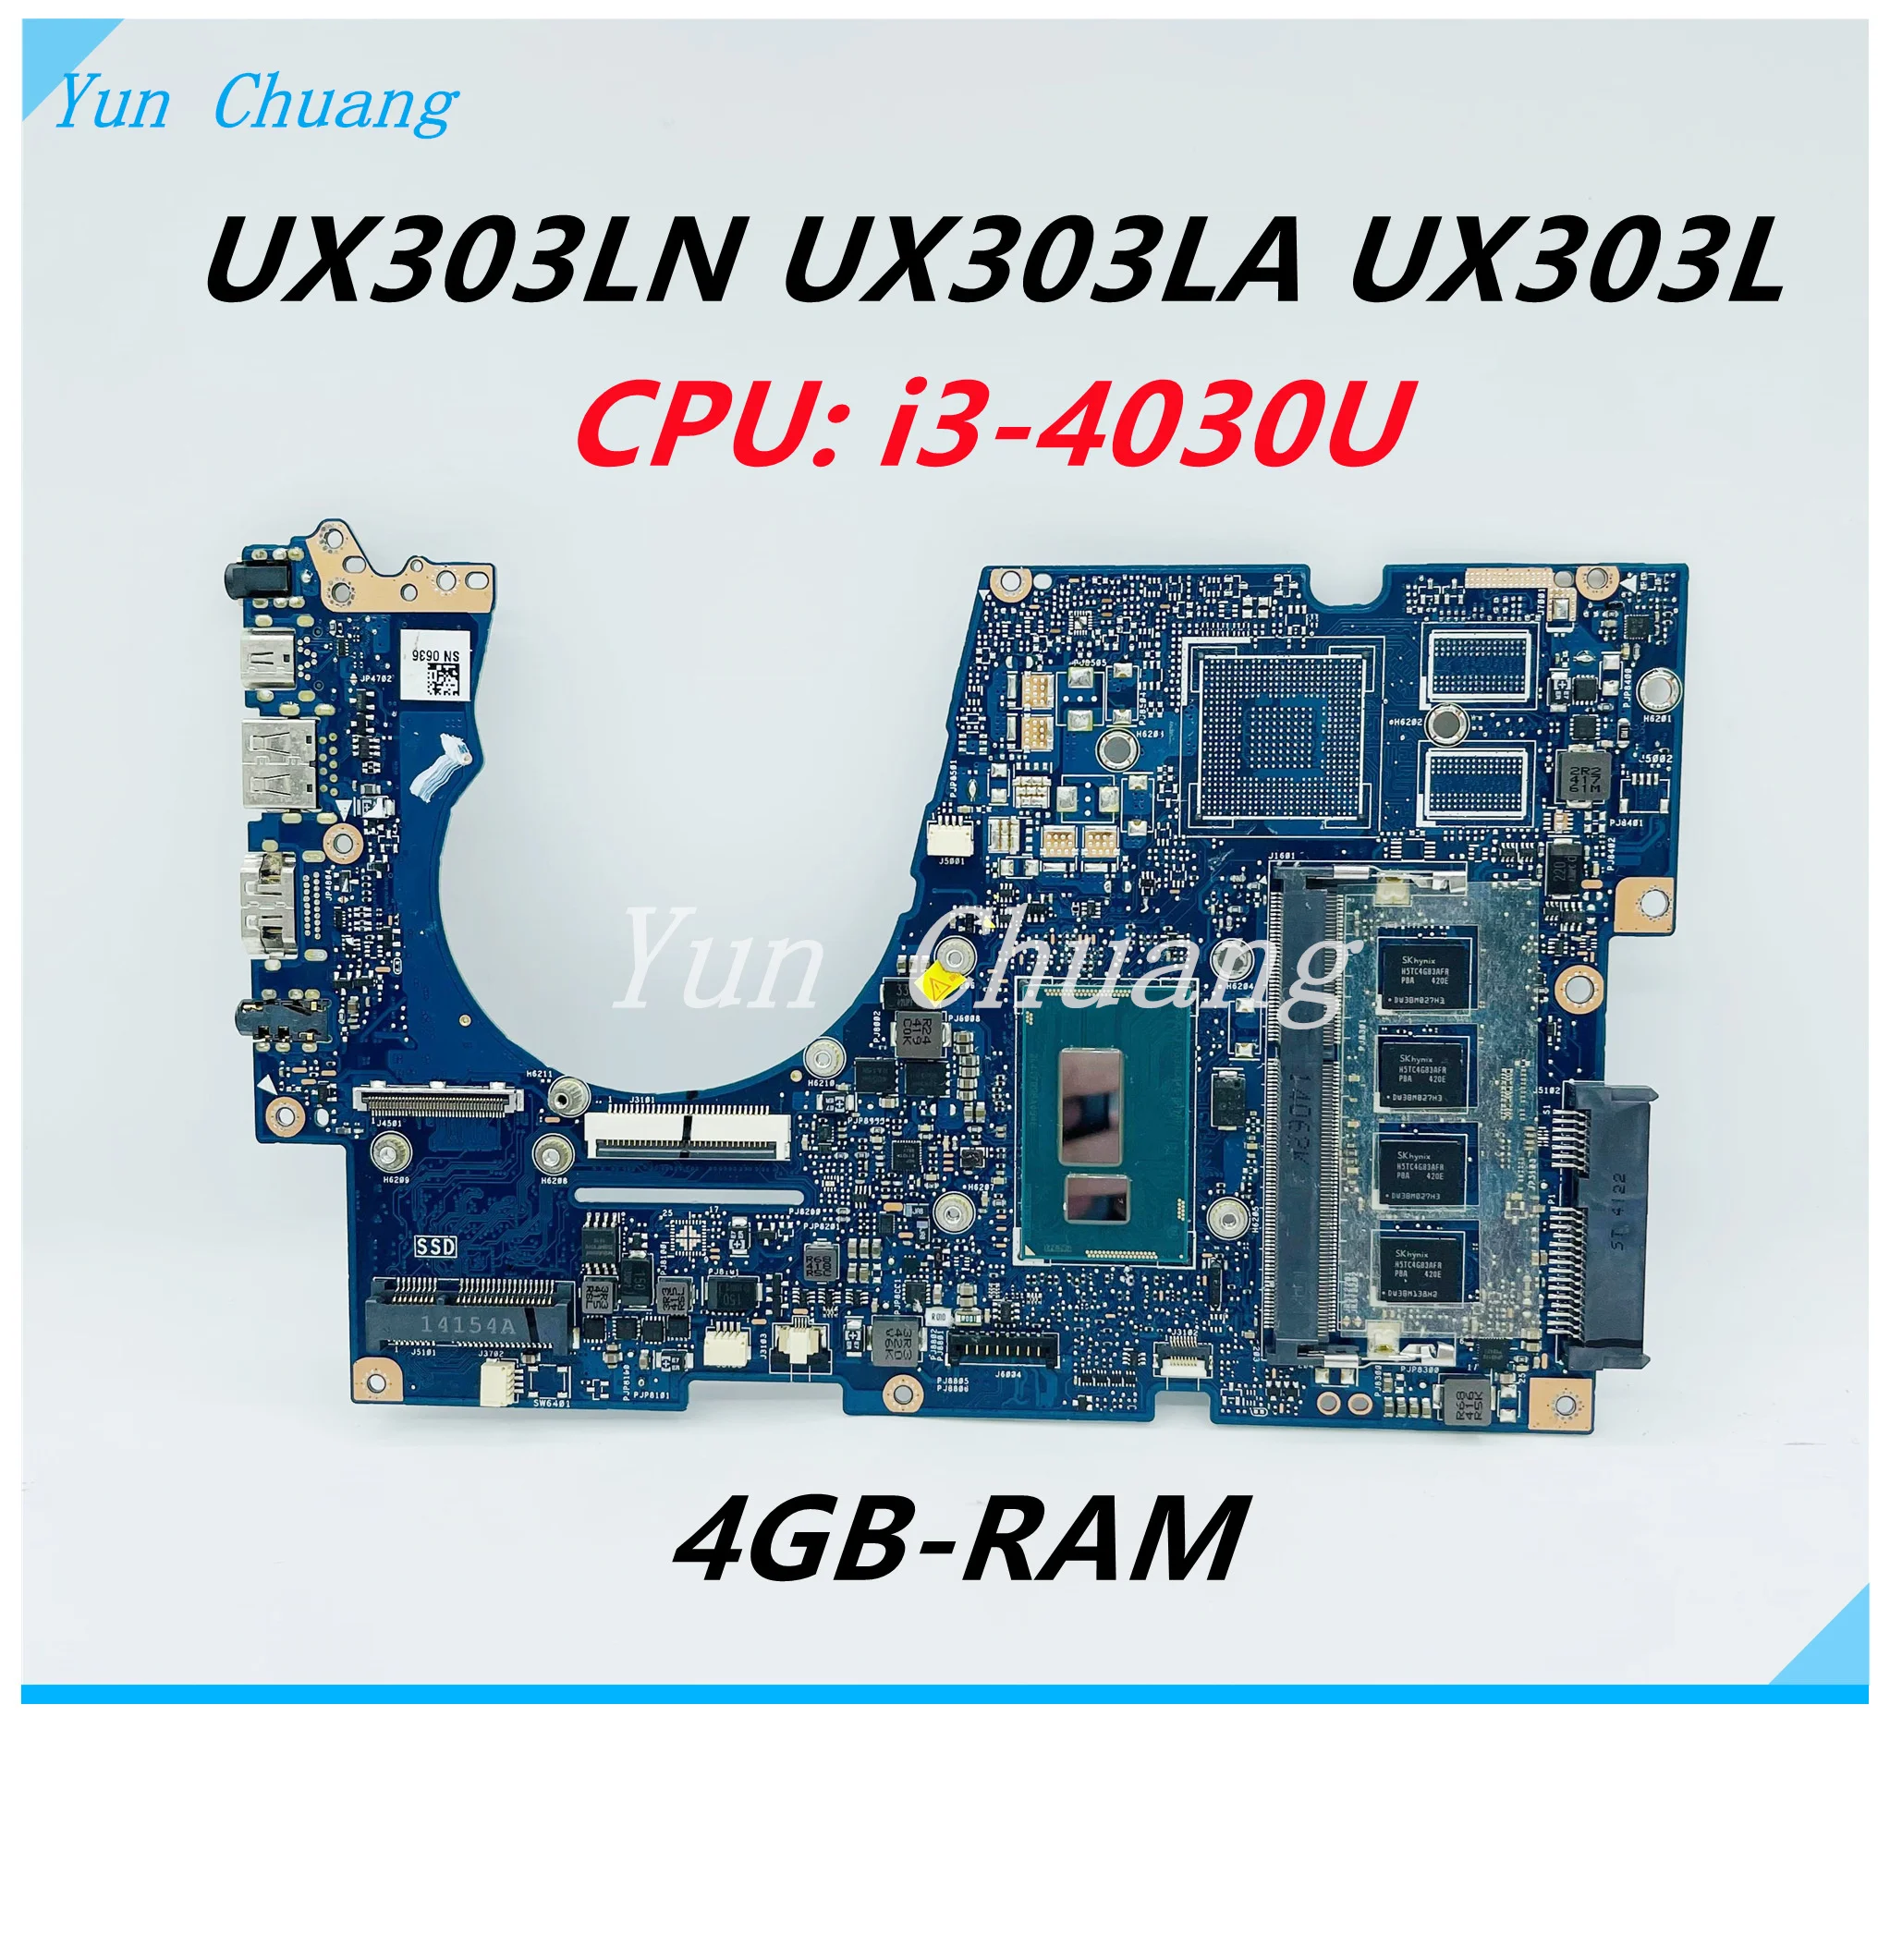 Материнская плата UX303LN REV2.0 Для Asus UX303 UX303LA UX303L UX303LN Материнская плата ноутбука с процессором i3-4030U 4 ГБ оперативной памяти Материнская плата 100% В ПОРЯДКЕ